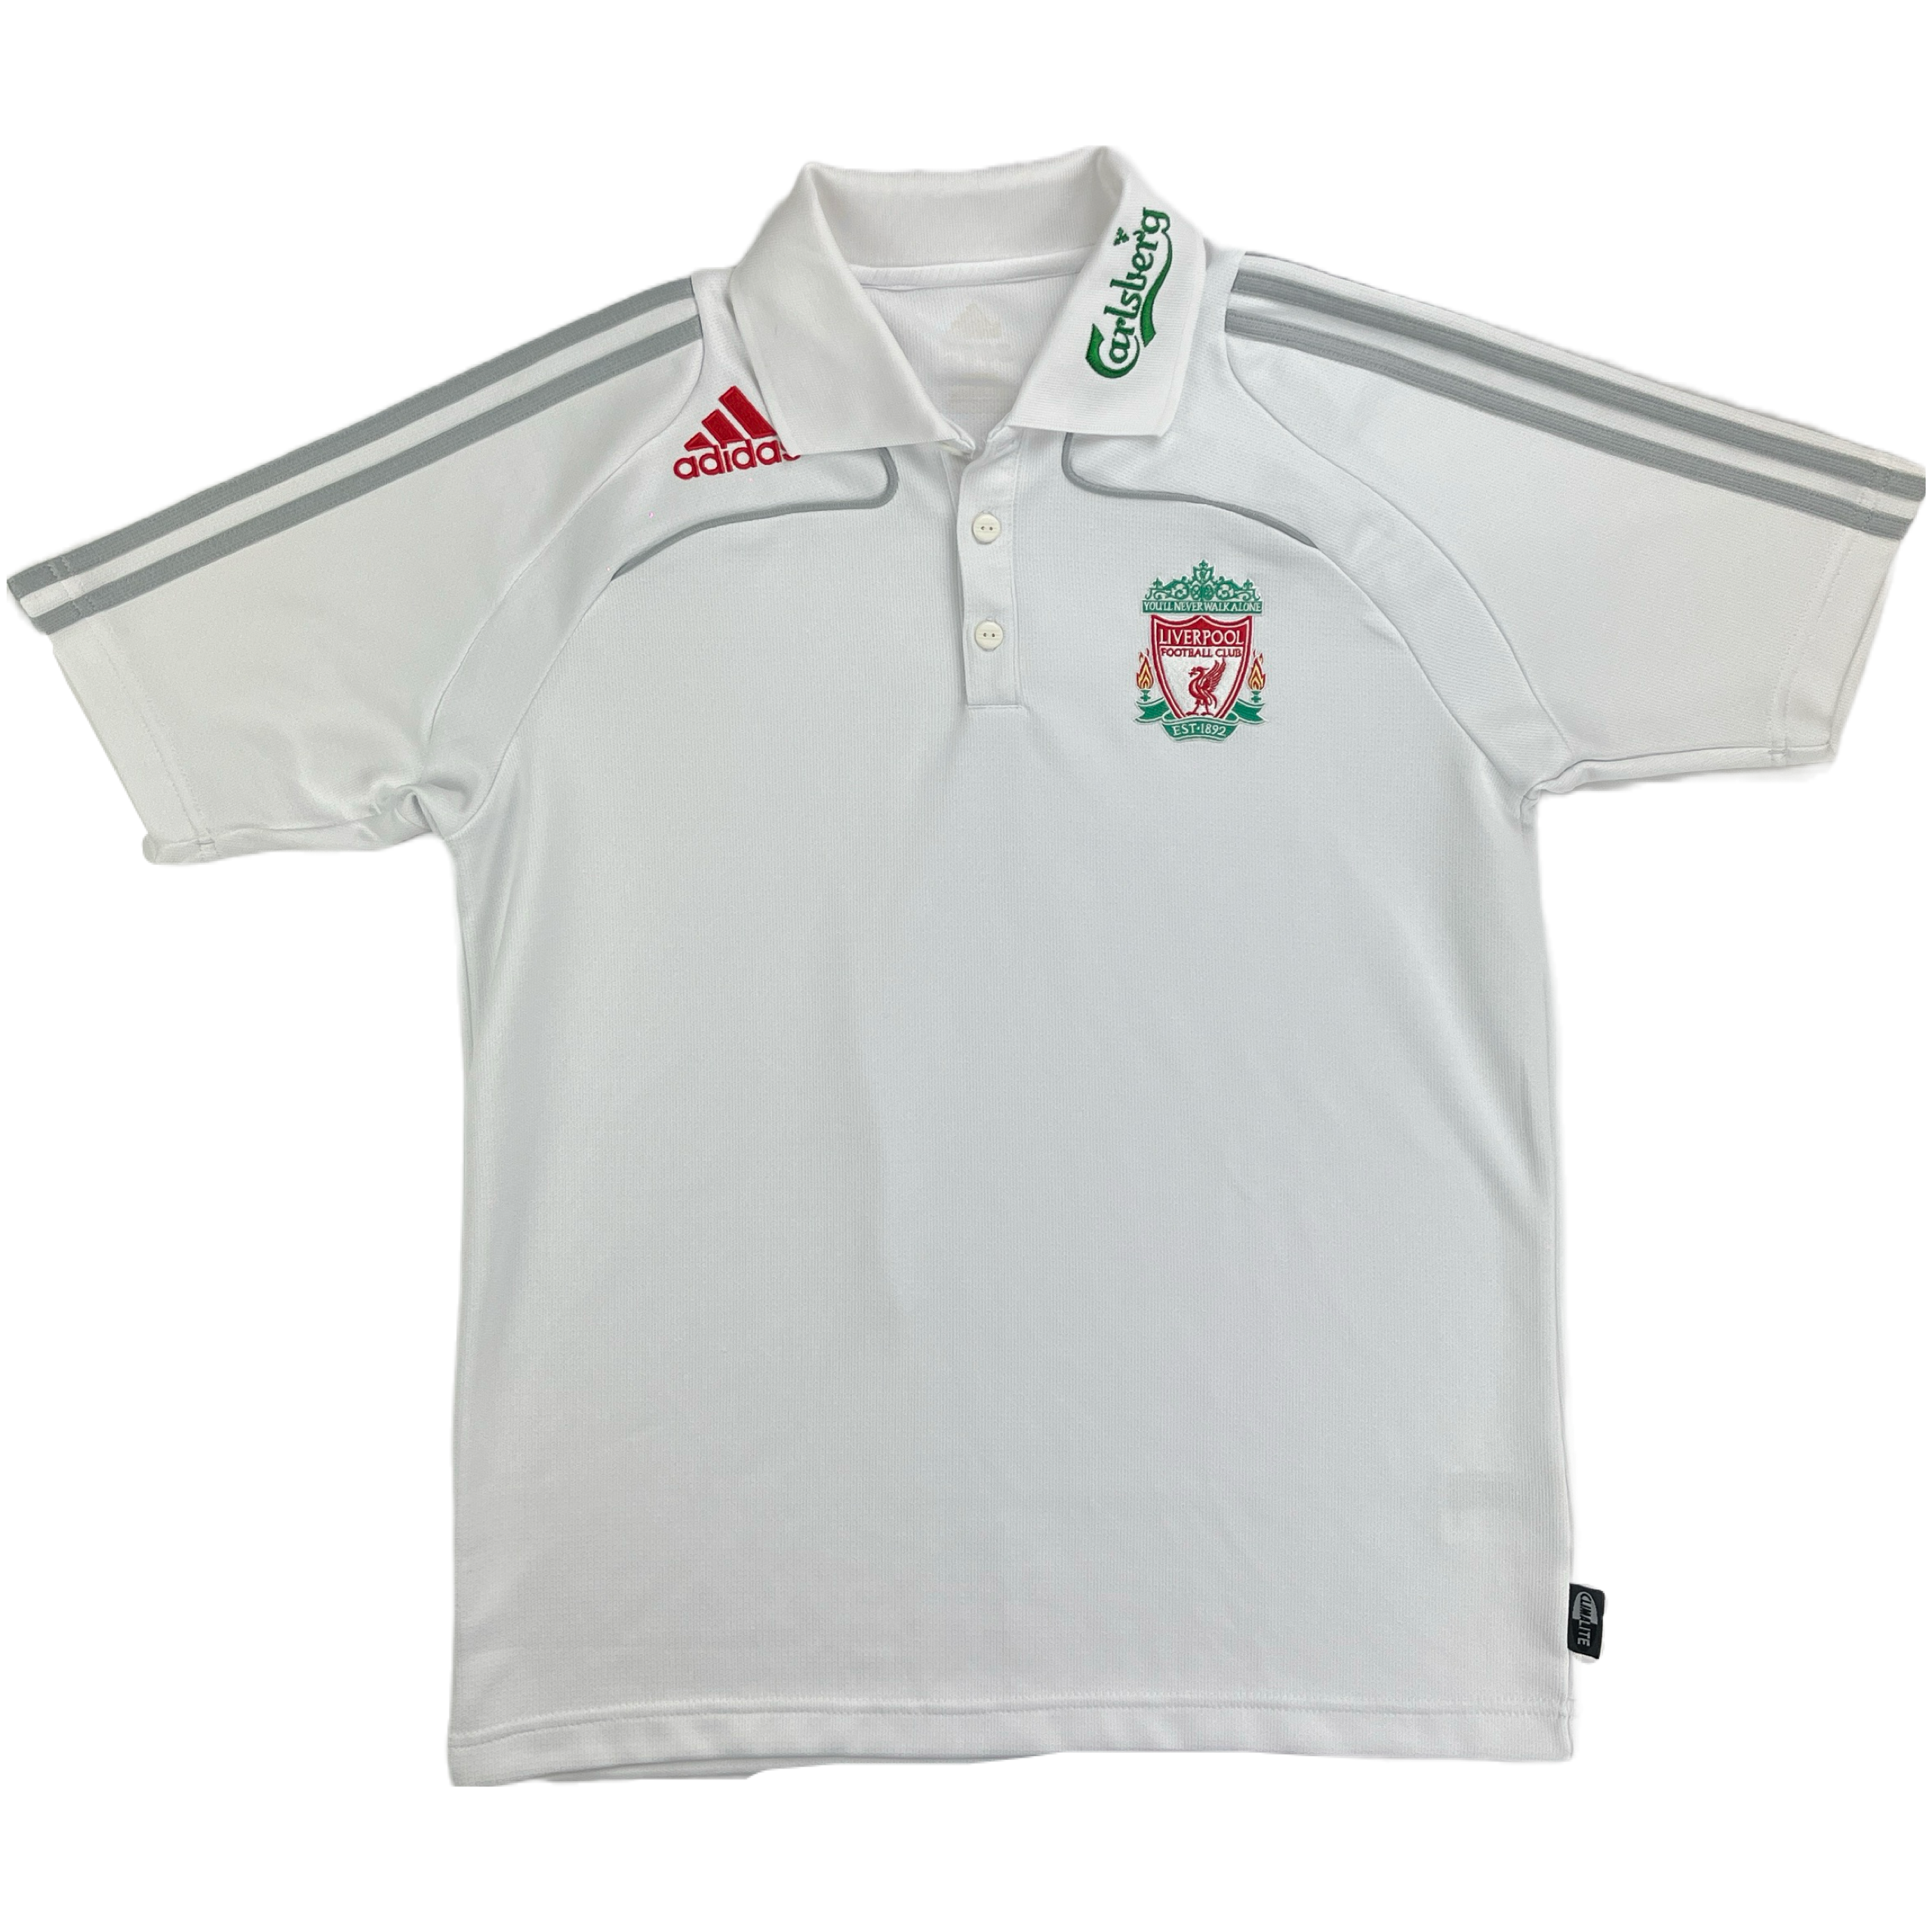 Liverpool 2008 Polo Shirt